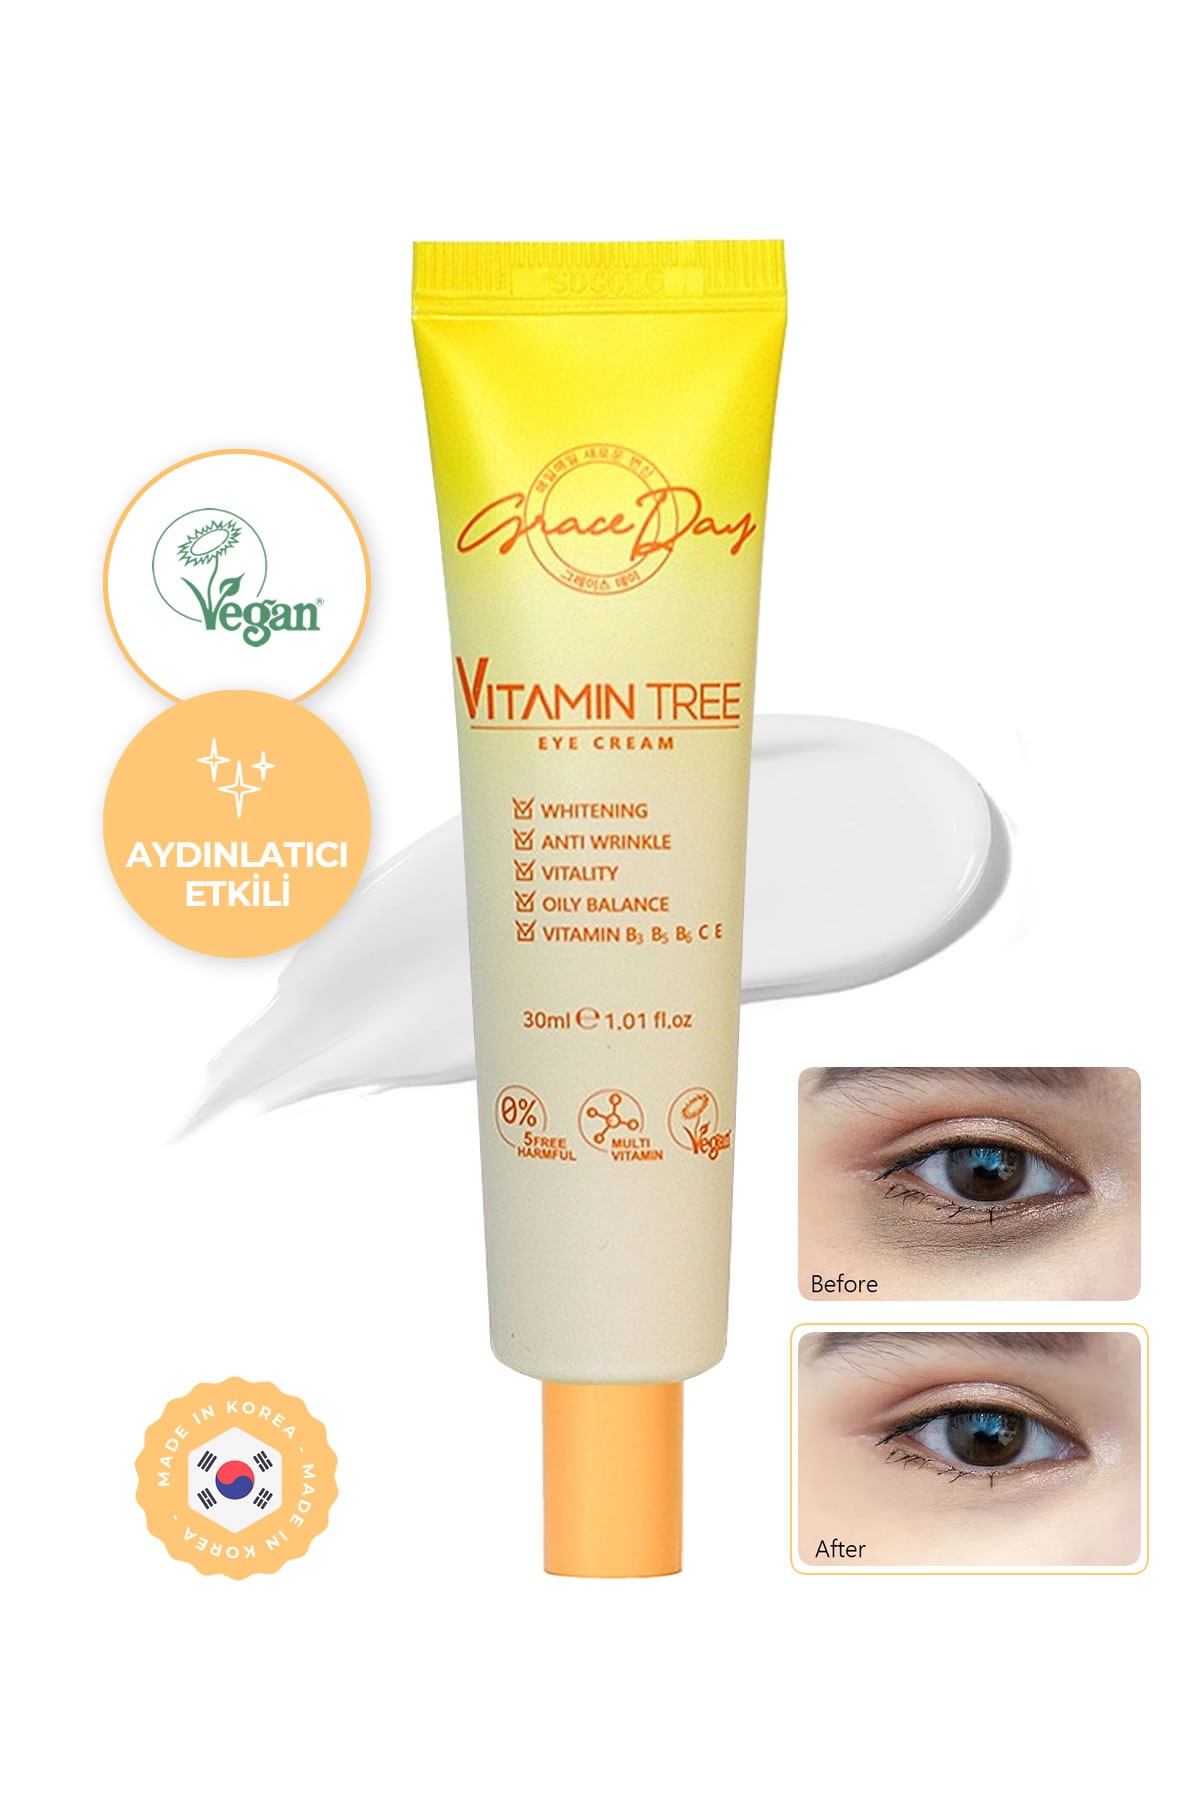 Aydınlatıcı Niacinamide ve Vitamin Kompleksi İçeren Vegan Göz Kremi GRACE DAY Vitamin Tree Eye Cream